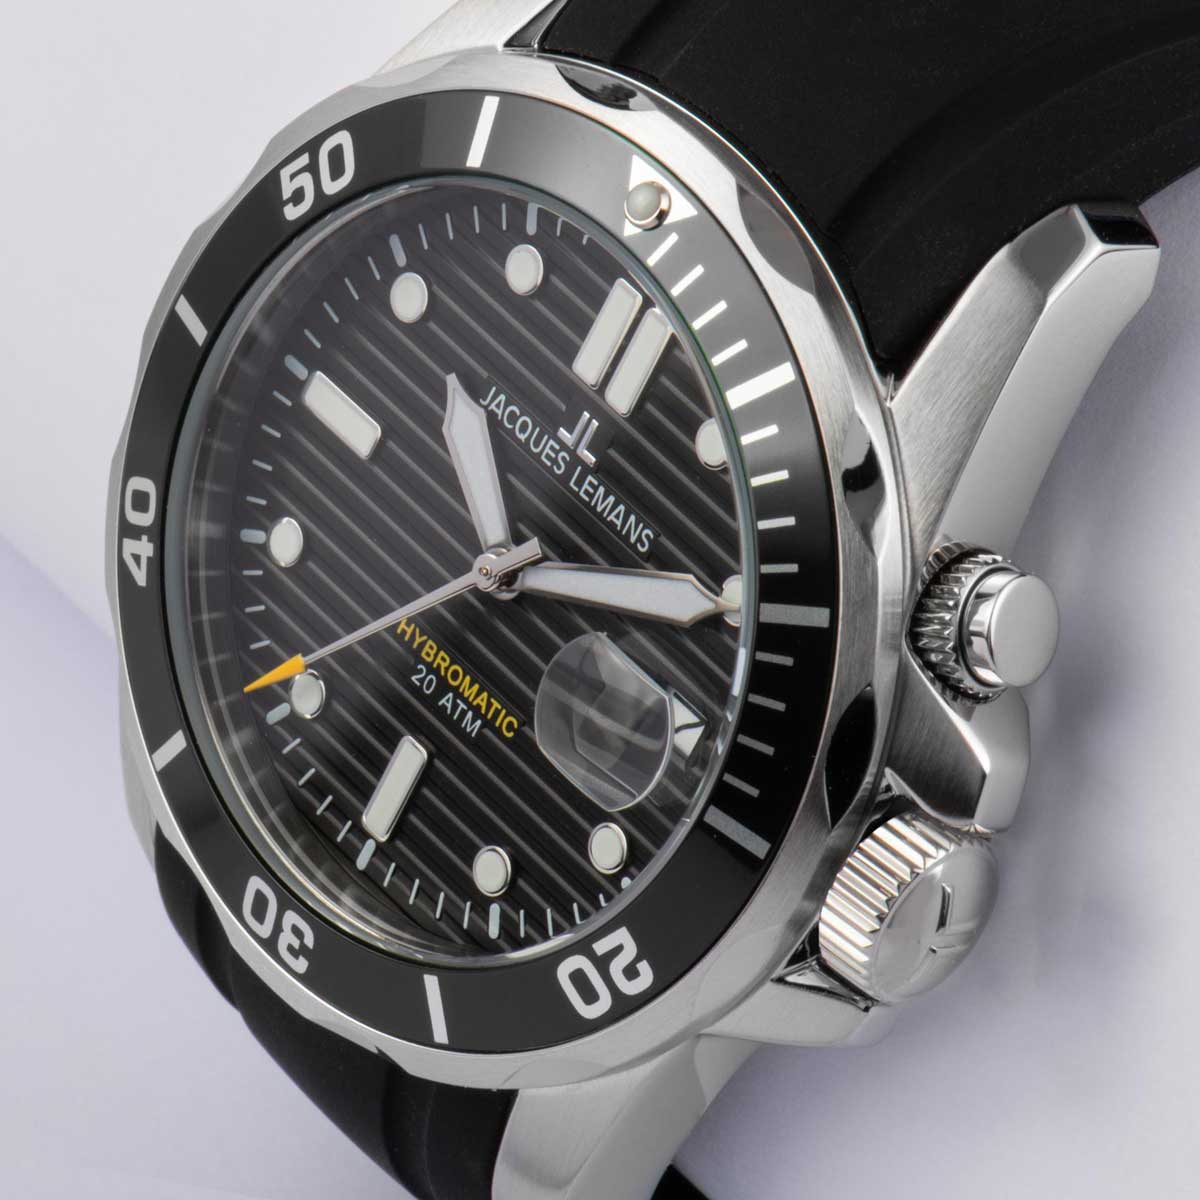 1-2170A, наручные часы Jacques Lemans